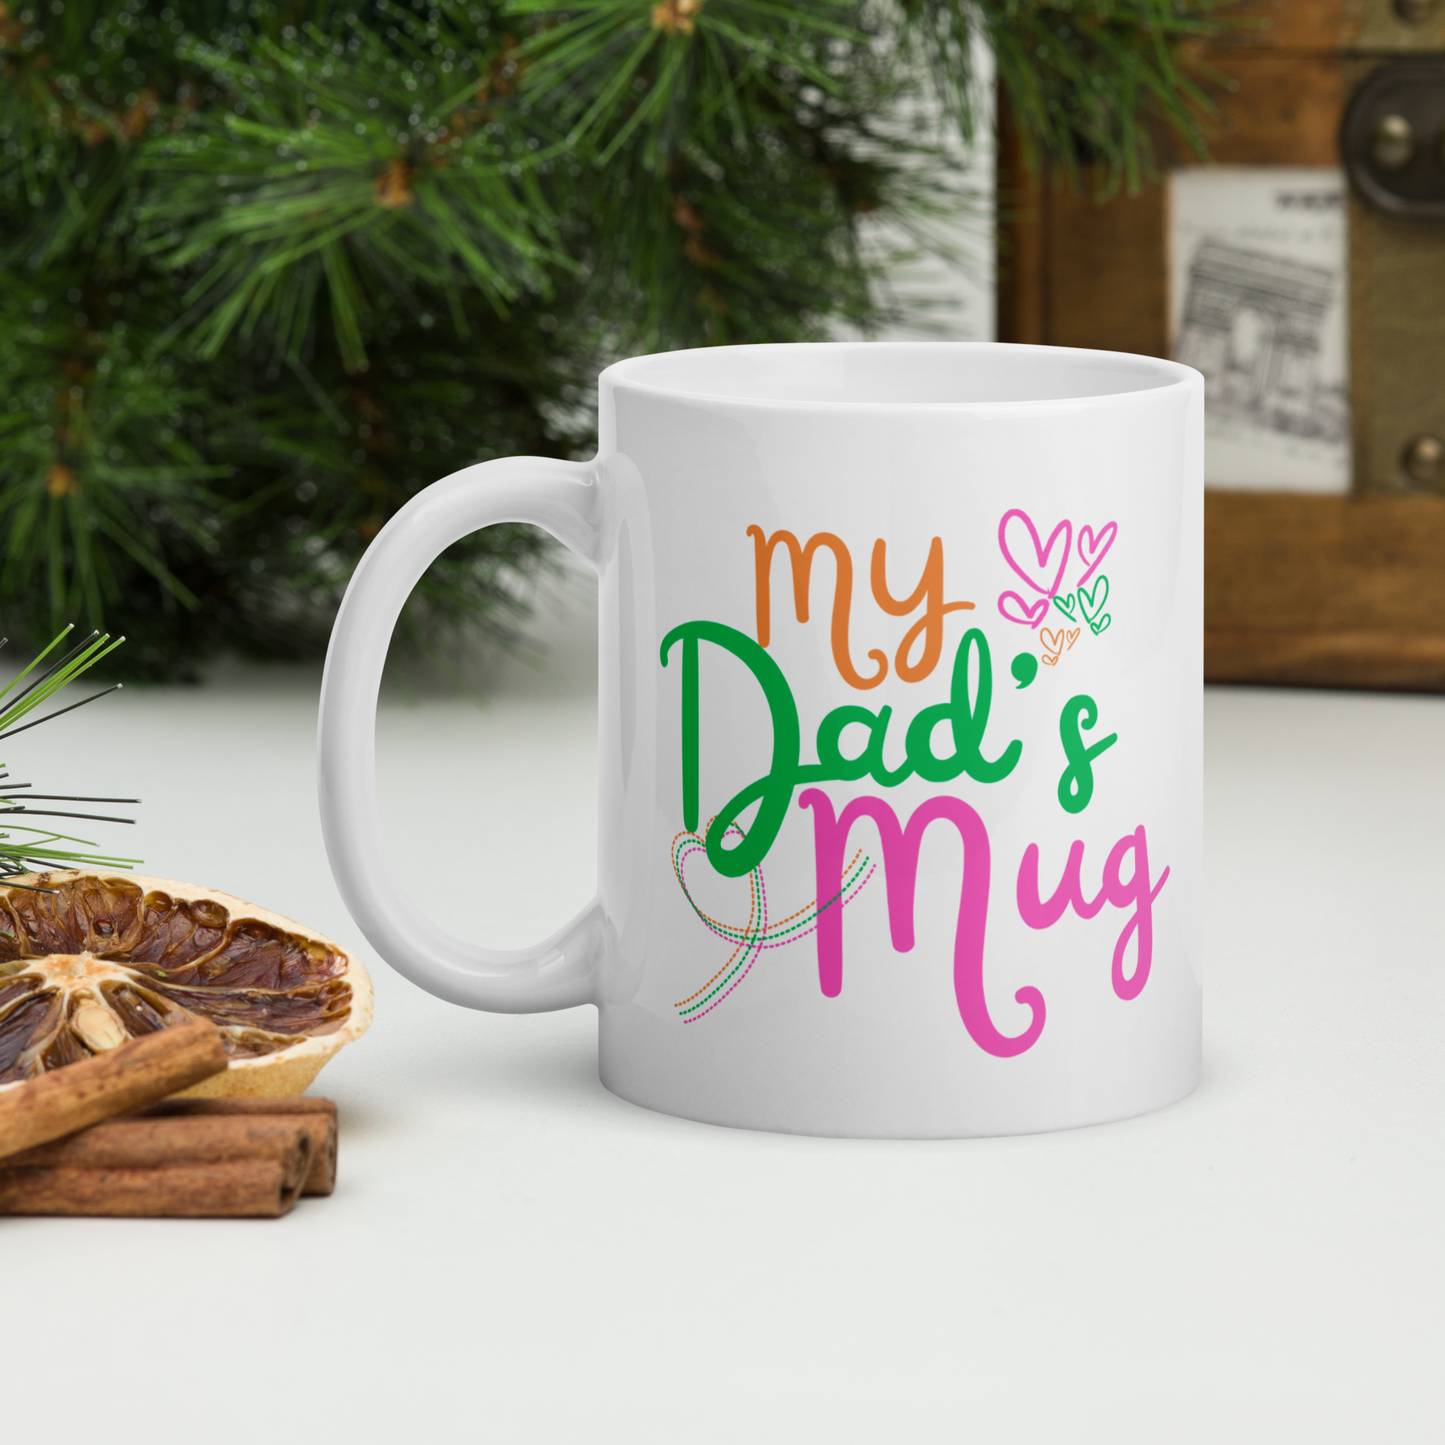 My Dad's Mug Coffee or Tea Ceramic Mug Funny Gift For Dad For Christmas, Birthday Or Father's Day Mug.